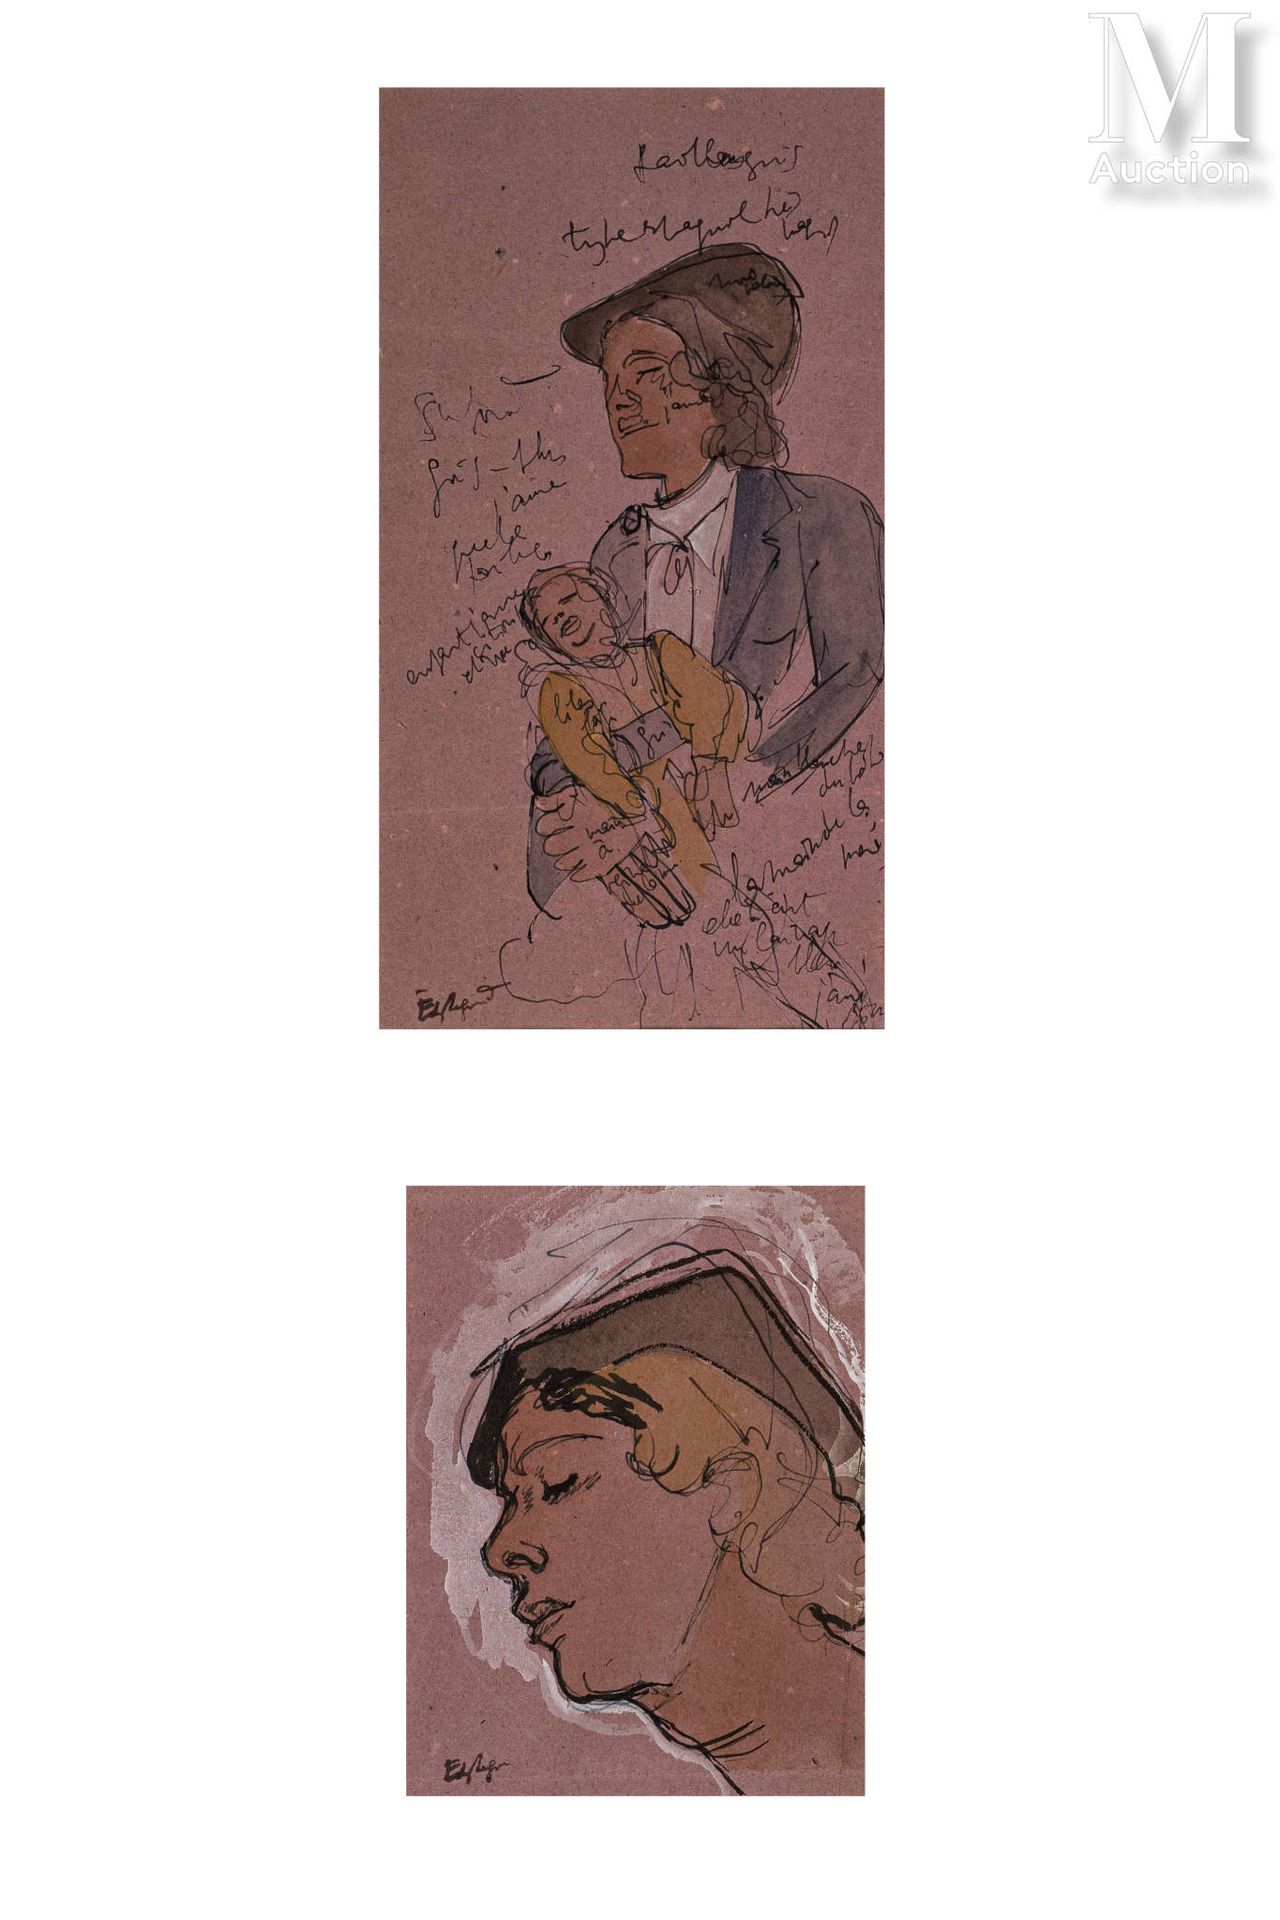 EDY LEGRAND (Bordeaux 1892-Bonnieux 1970) Anatre

Guazzo su carta 

25 x 31cm

F&hellip;